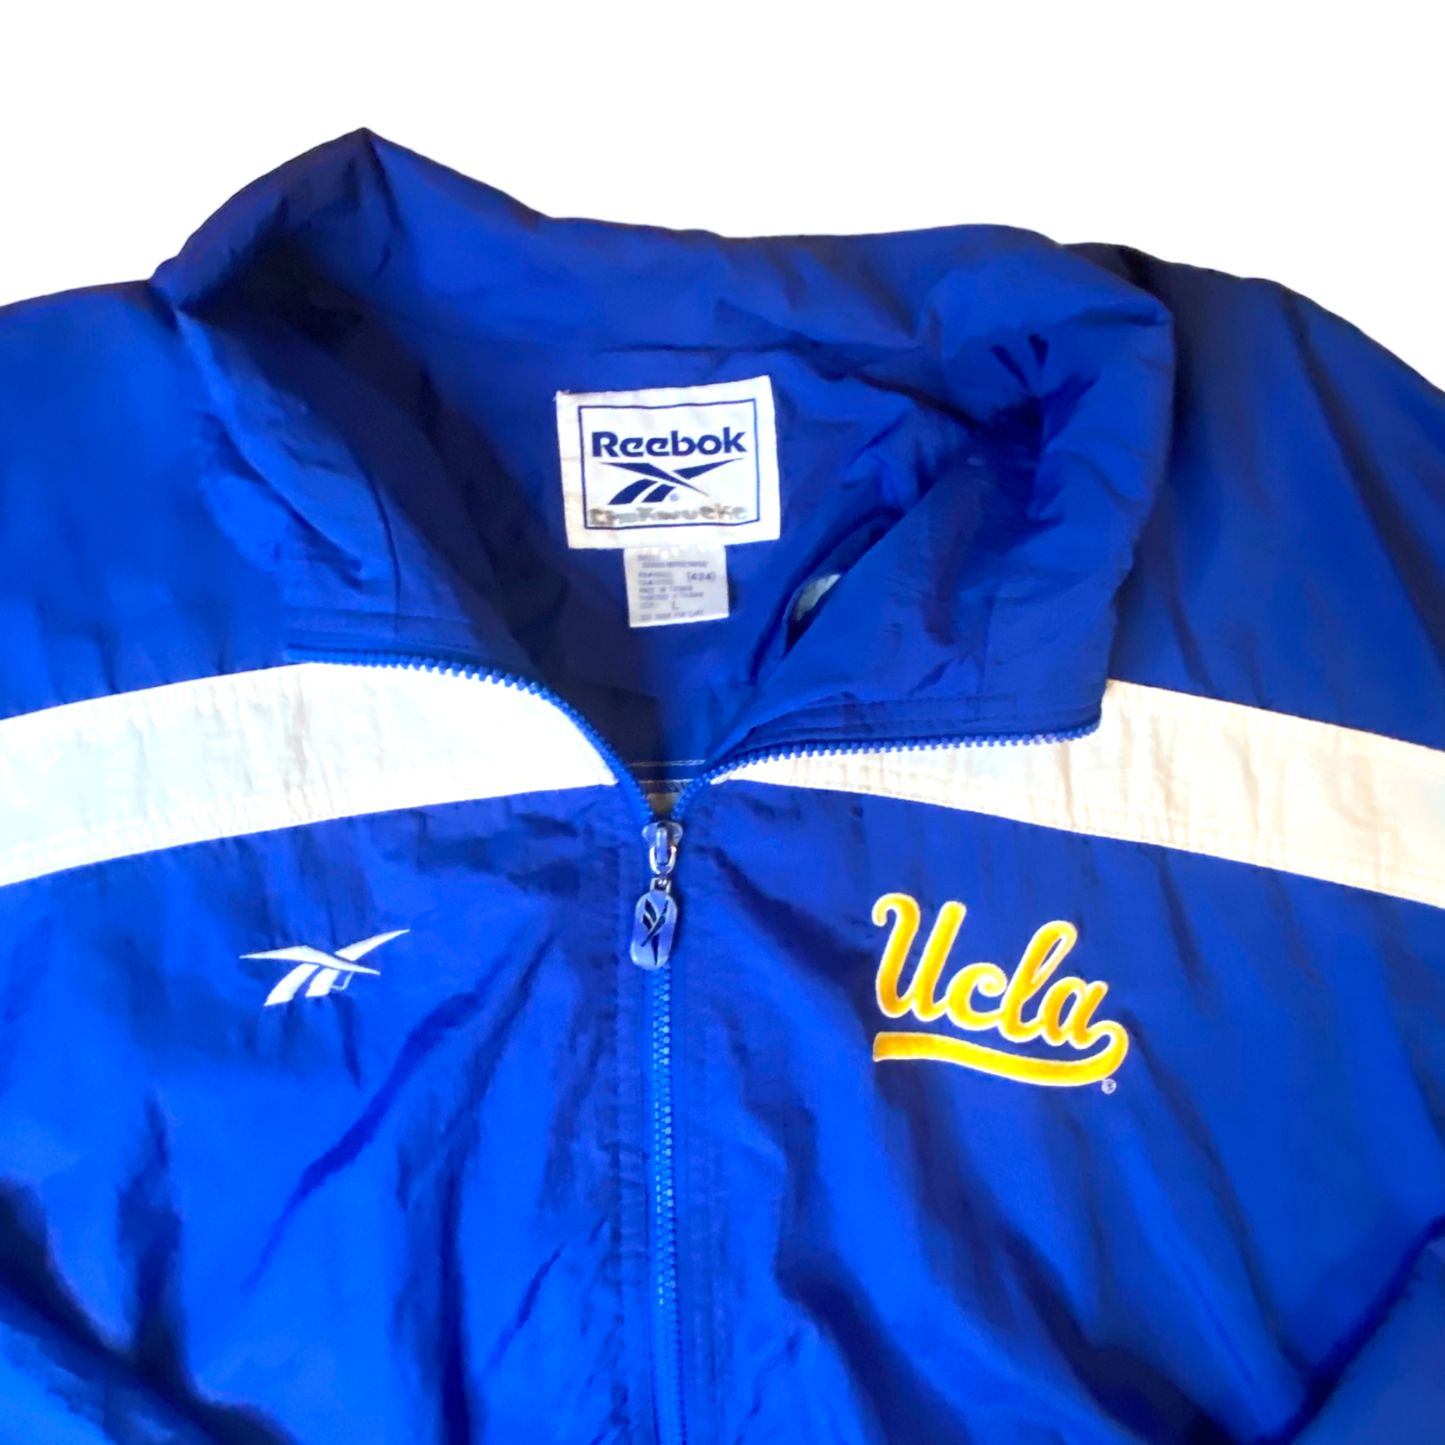 Reebok - UCLA Blue Windbreaker Full Zip Vintage 90s Jacket